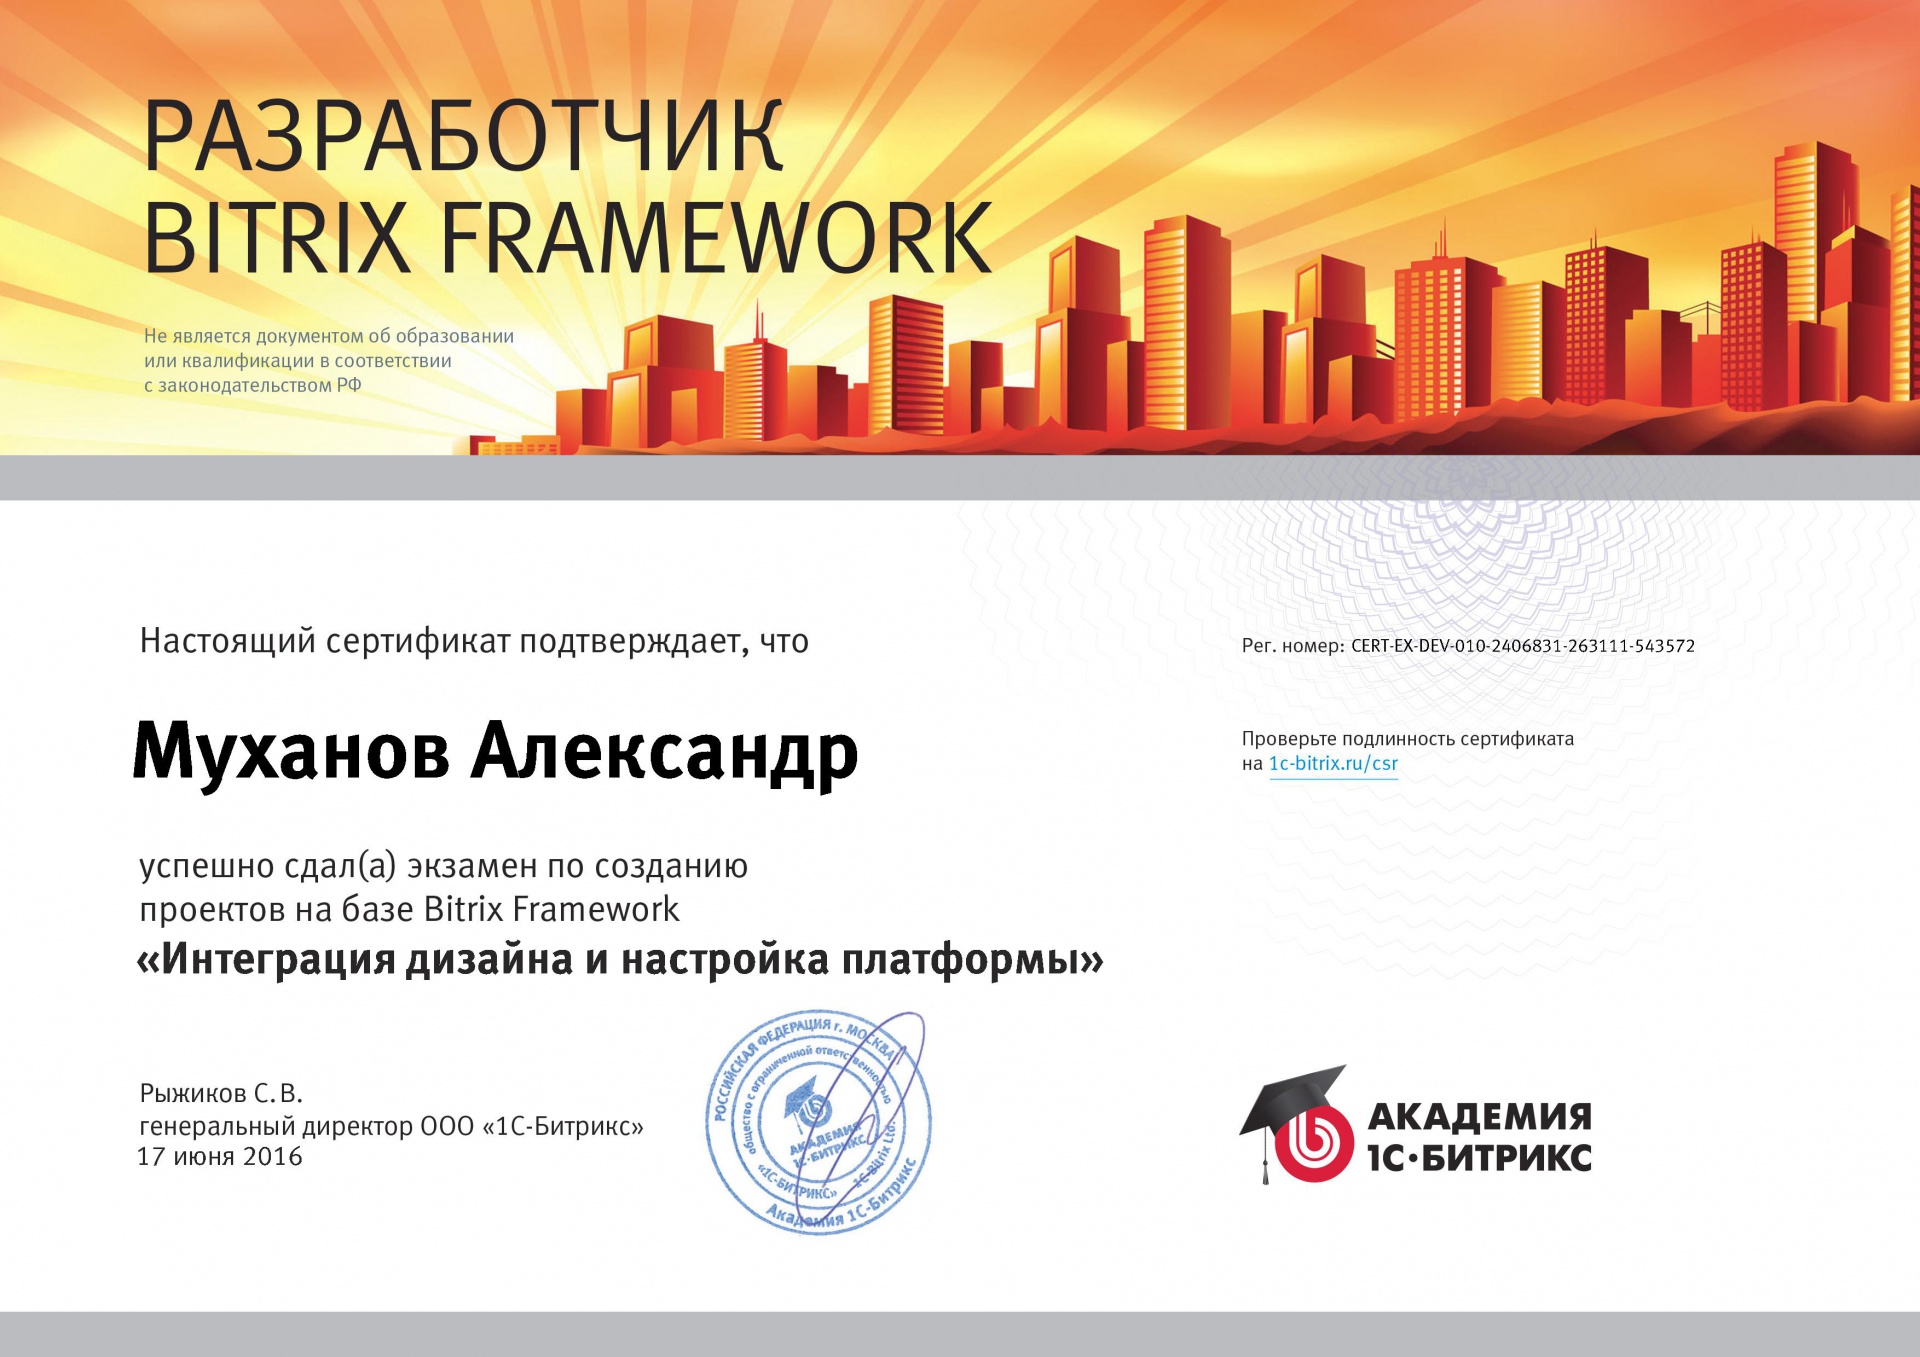 Экзамен "Интеграция дизайна и настройка платформы": Александр Муханов